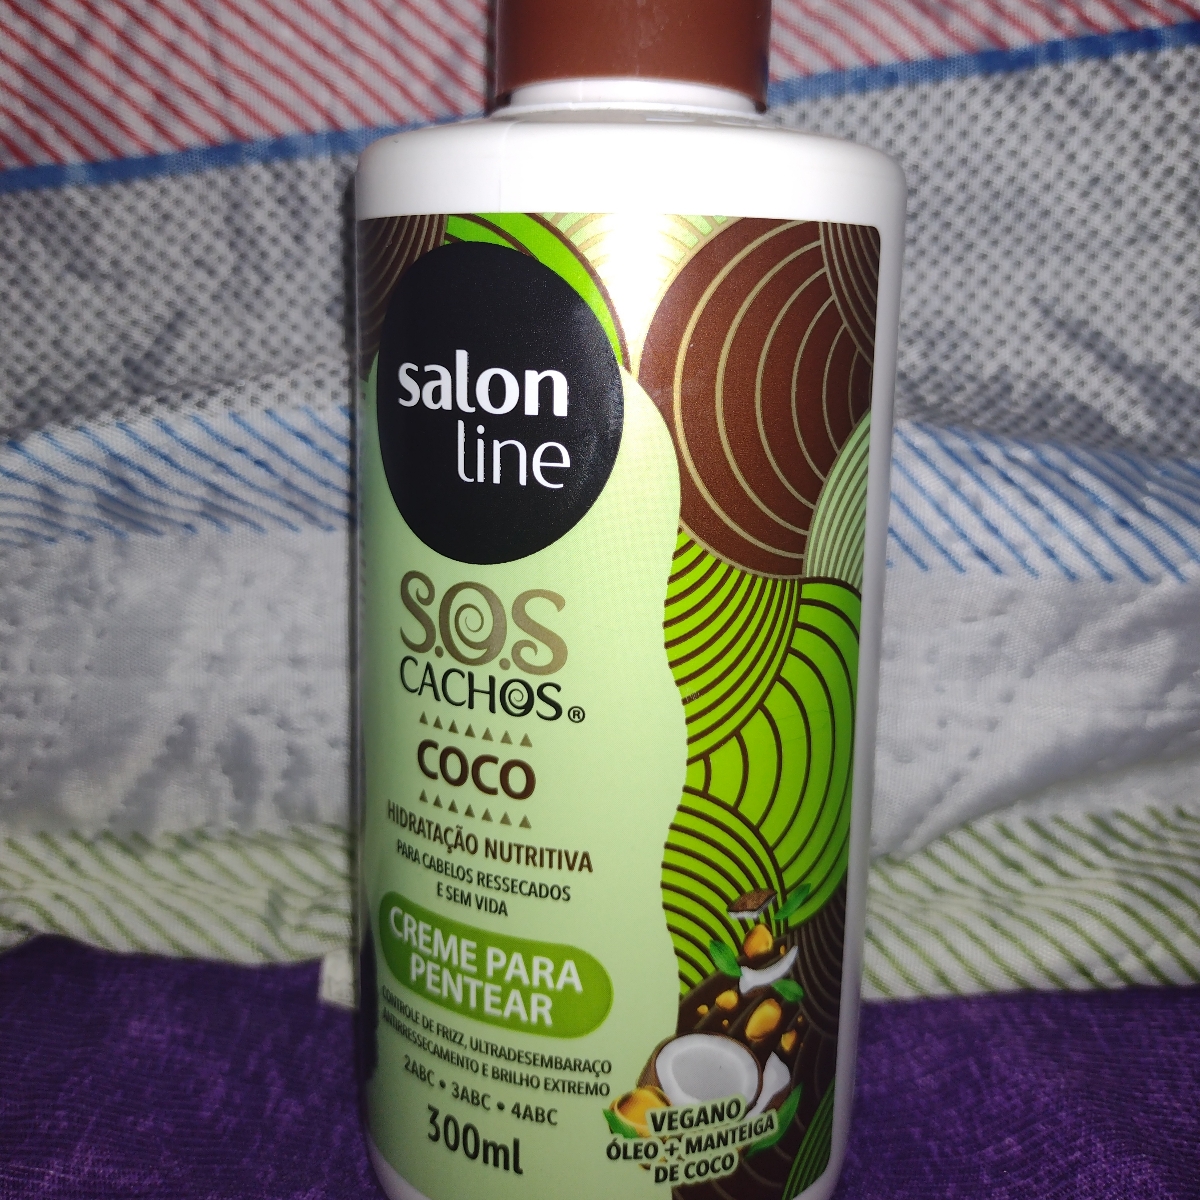 Salon line Creme Para Pentear SOS Cachos Review | abillion